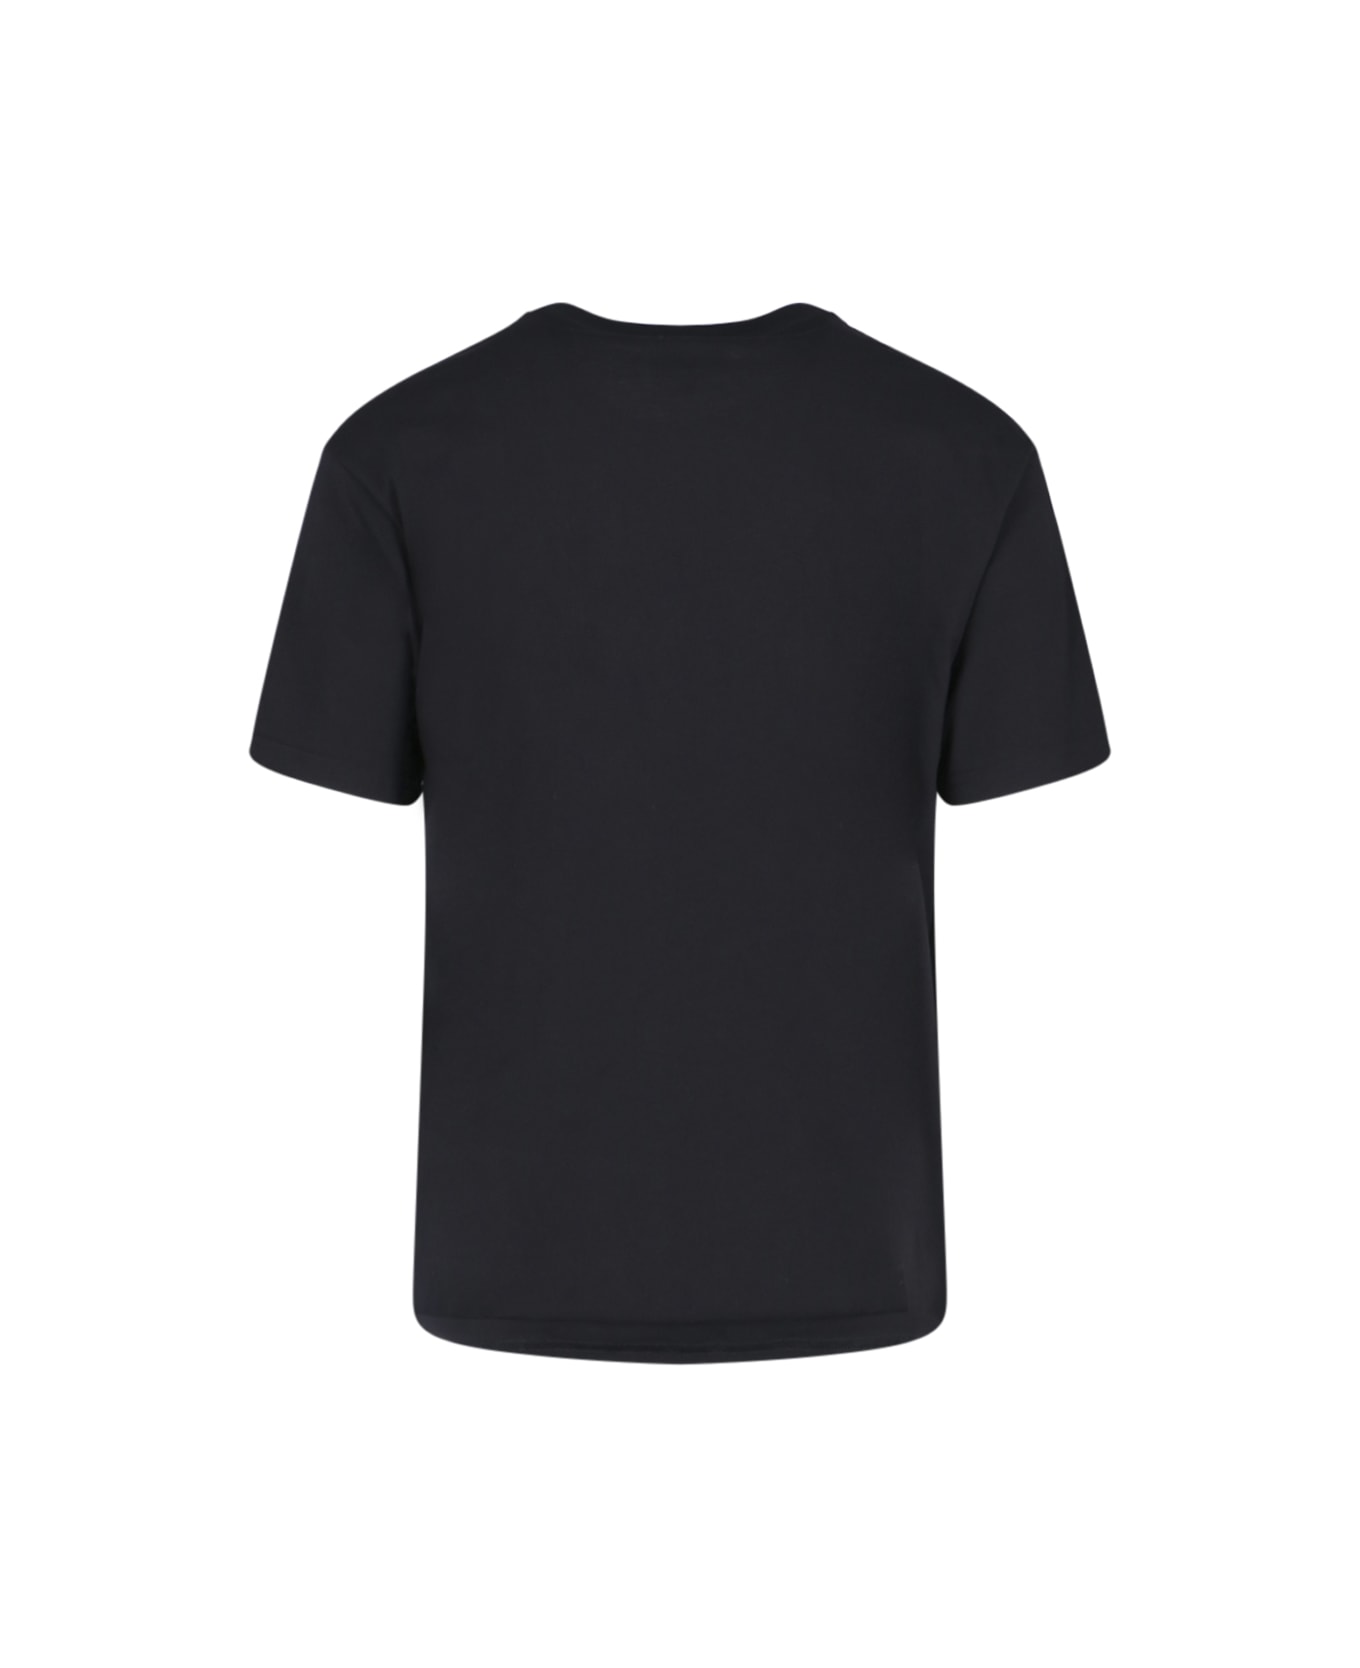 A.P.C. Kyle T-shirt - black